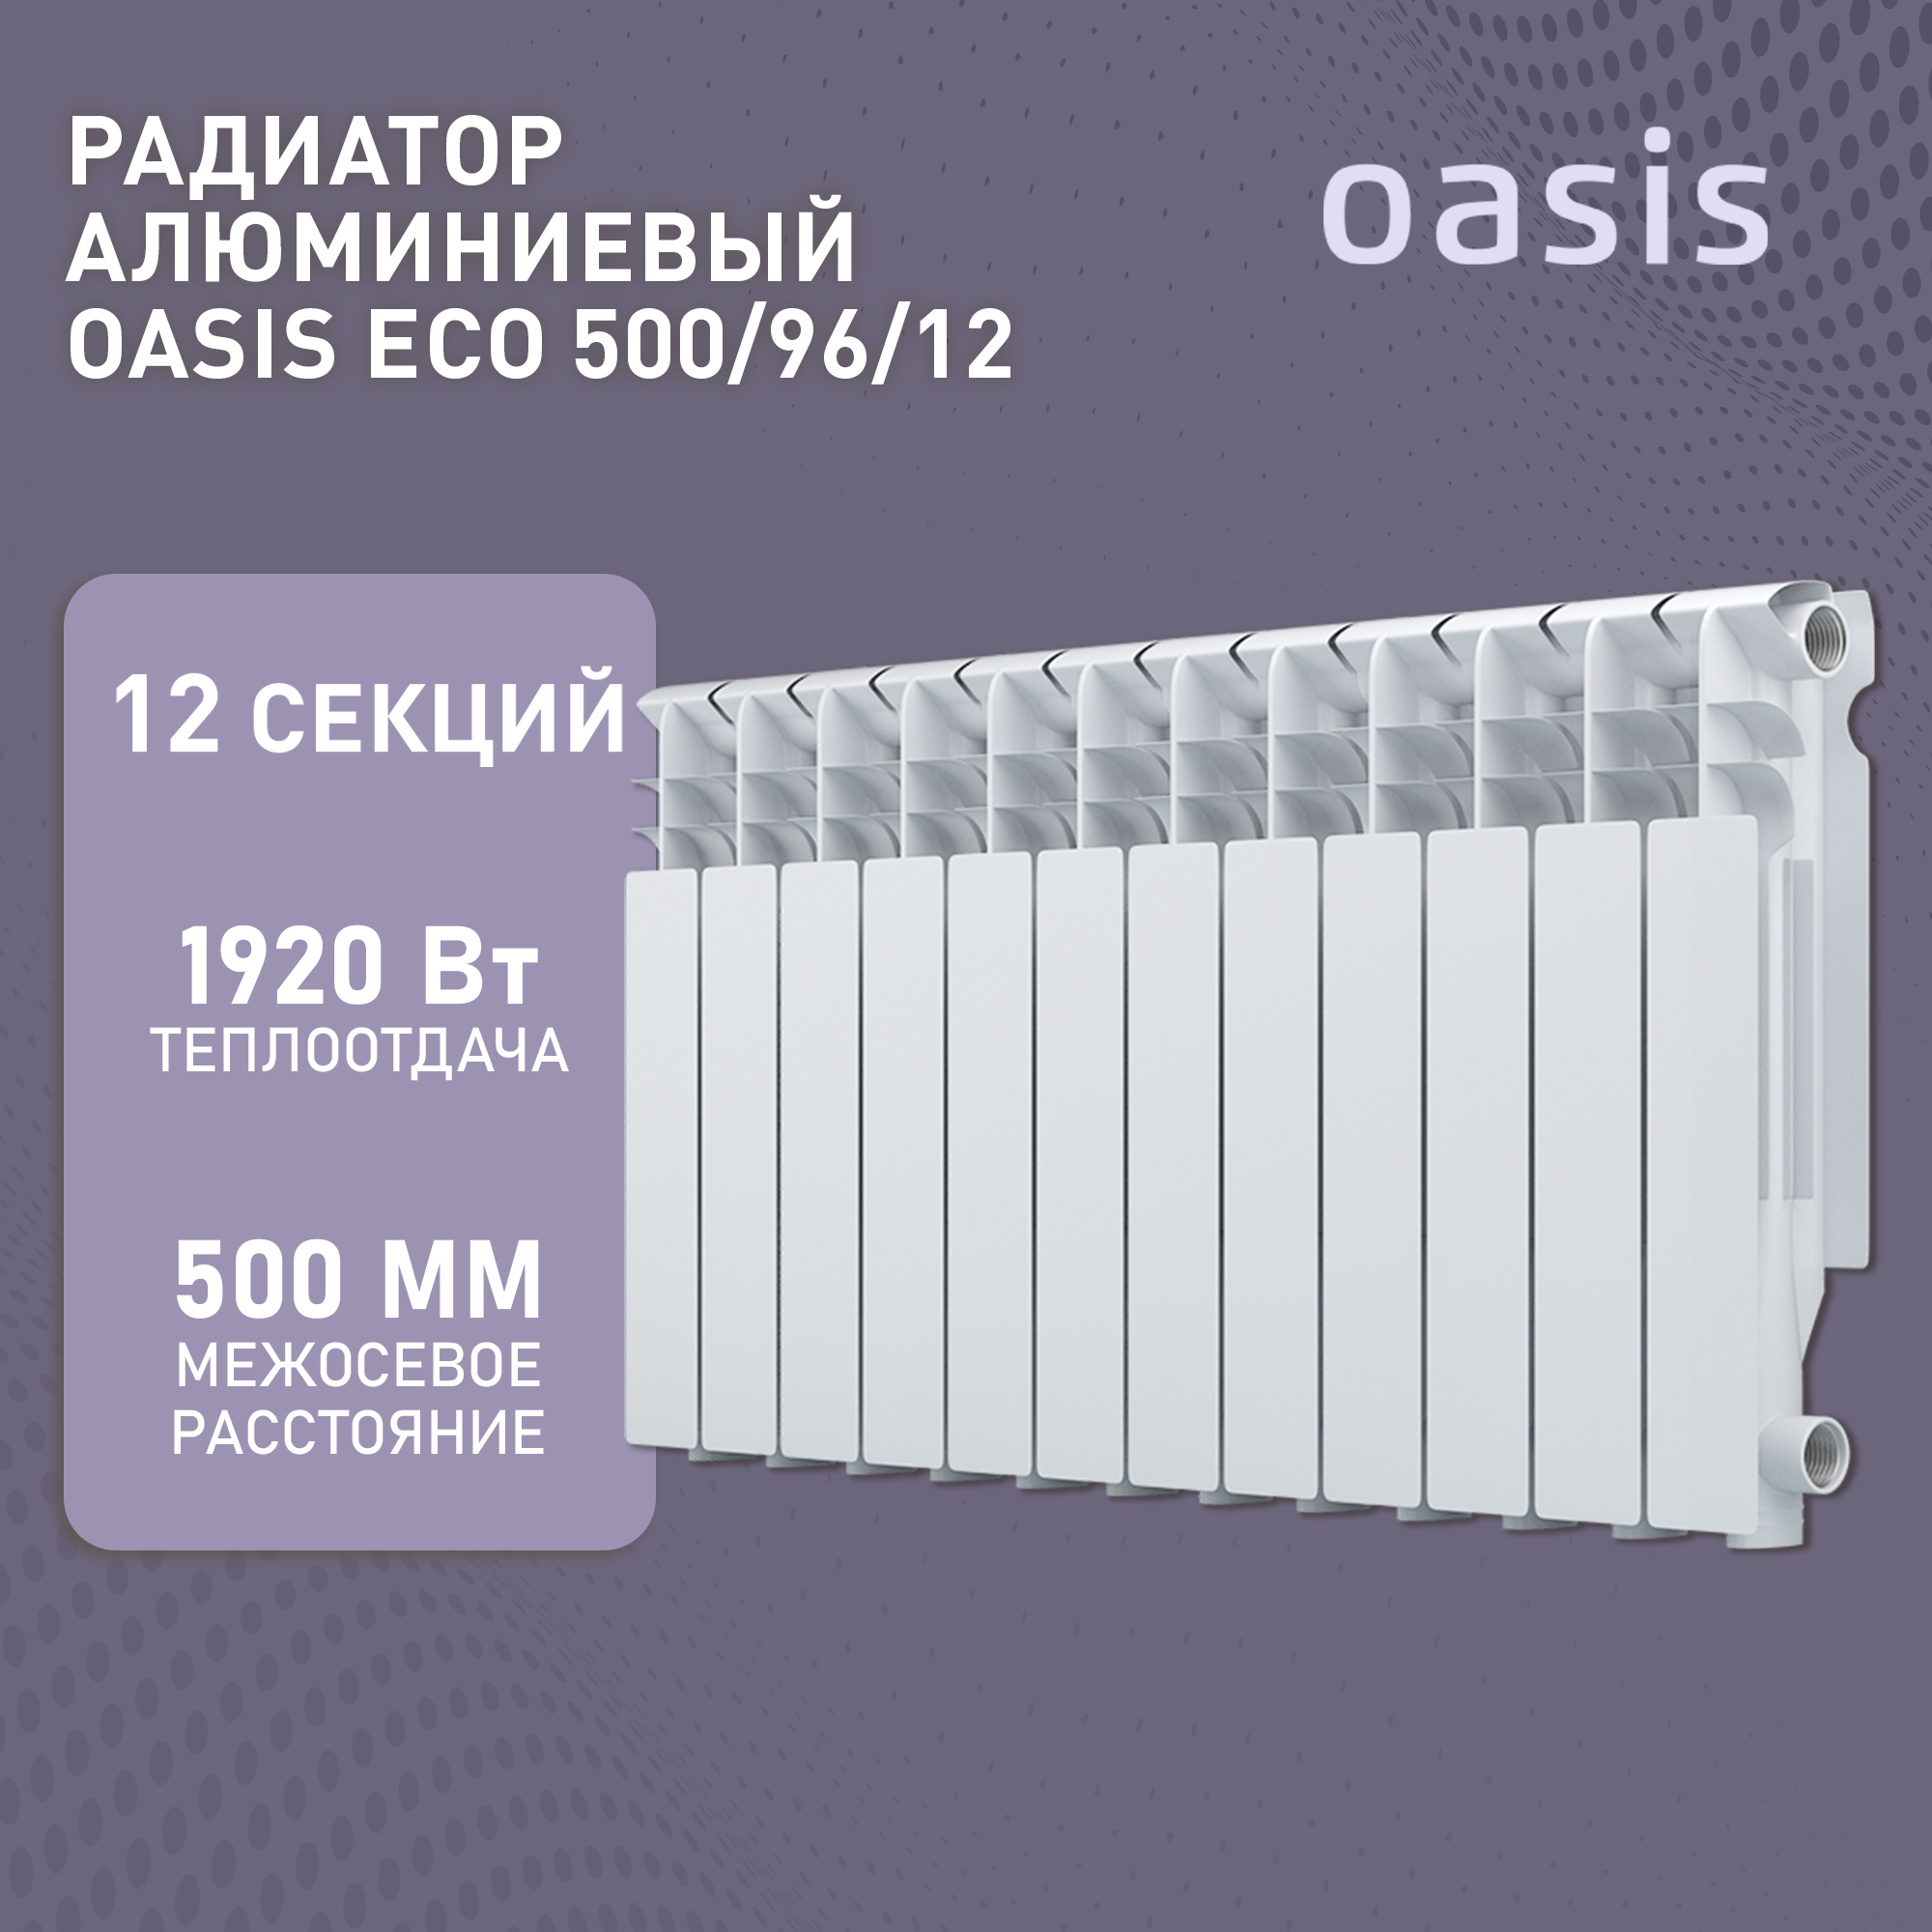 Радиатор алюм. Oasis ЭКО 500/96 12 секций